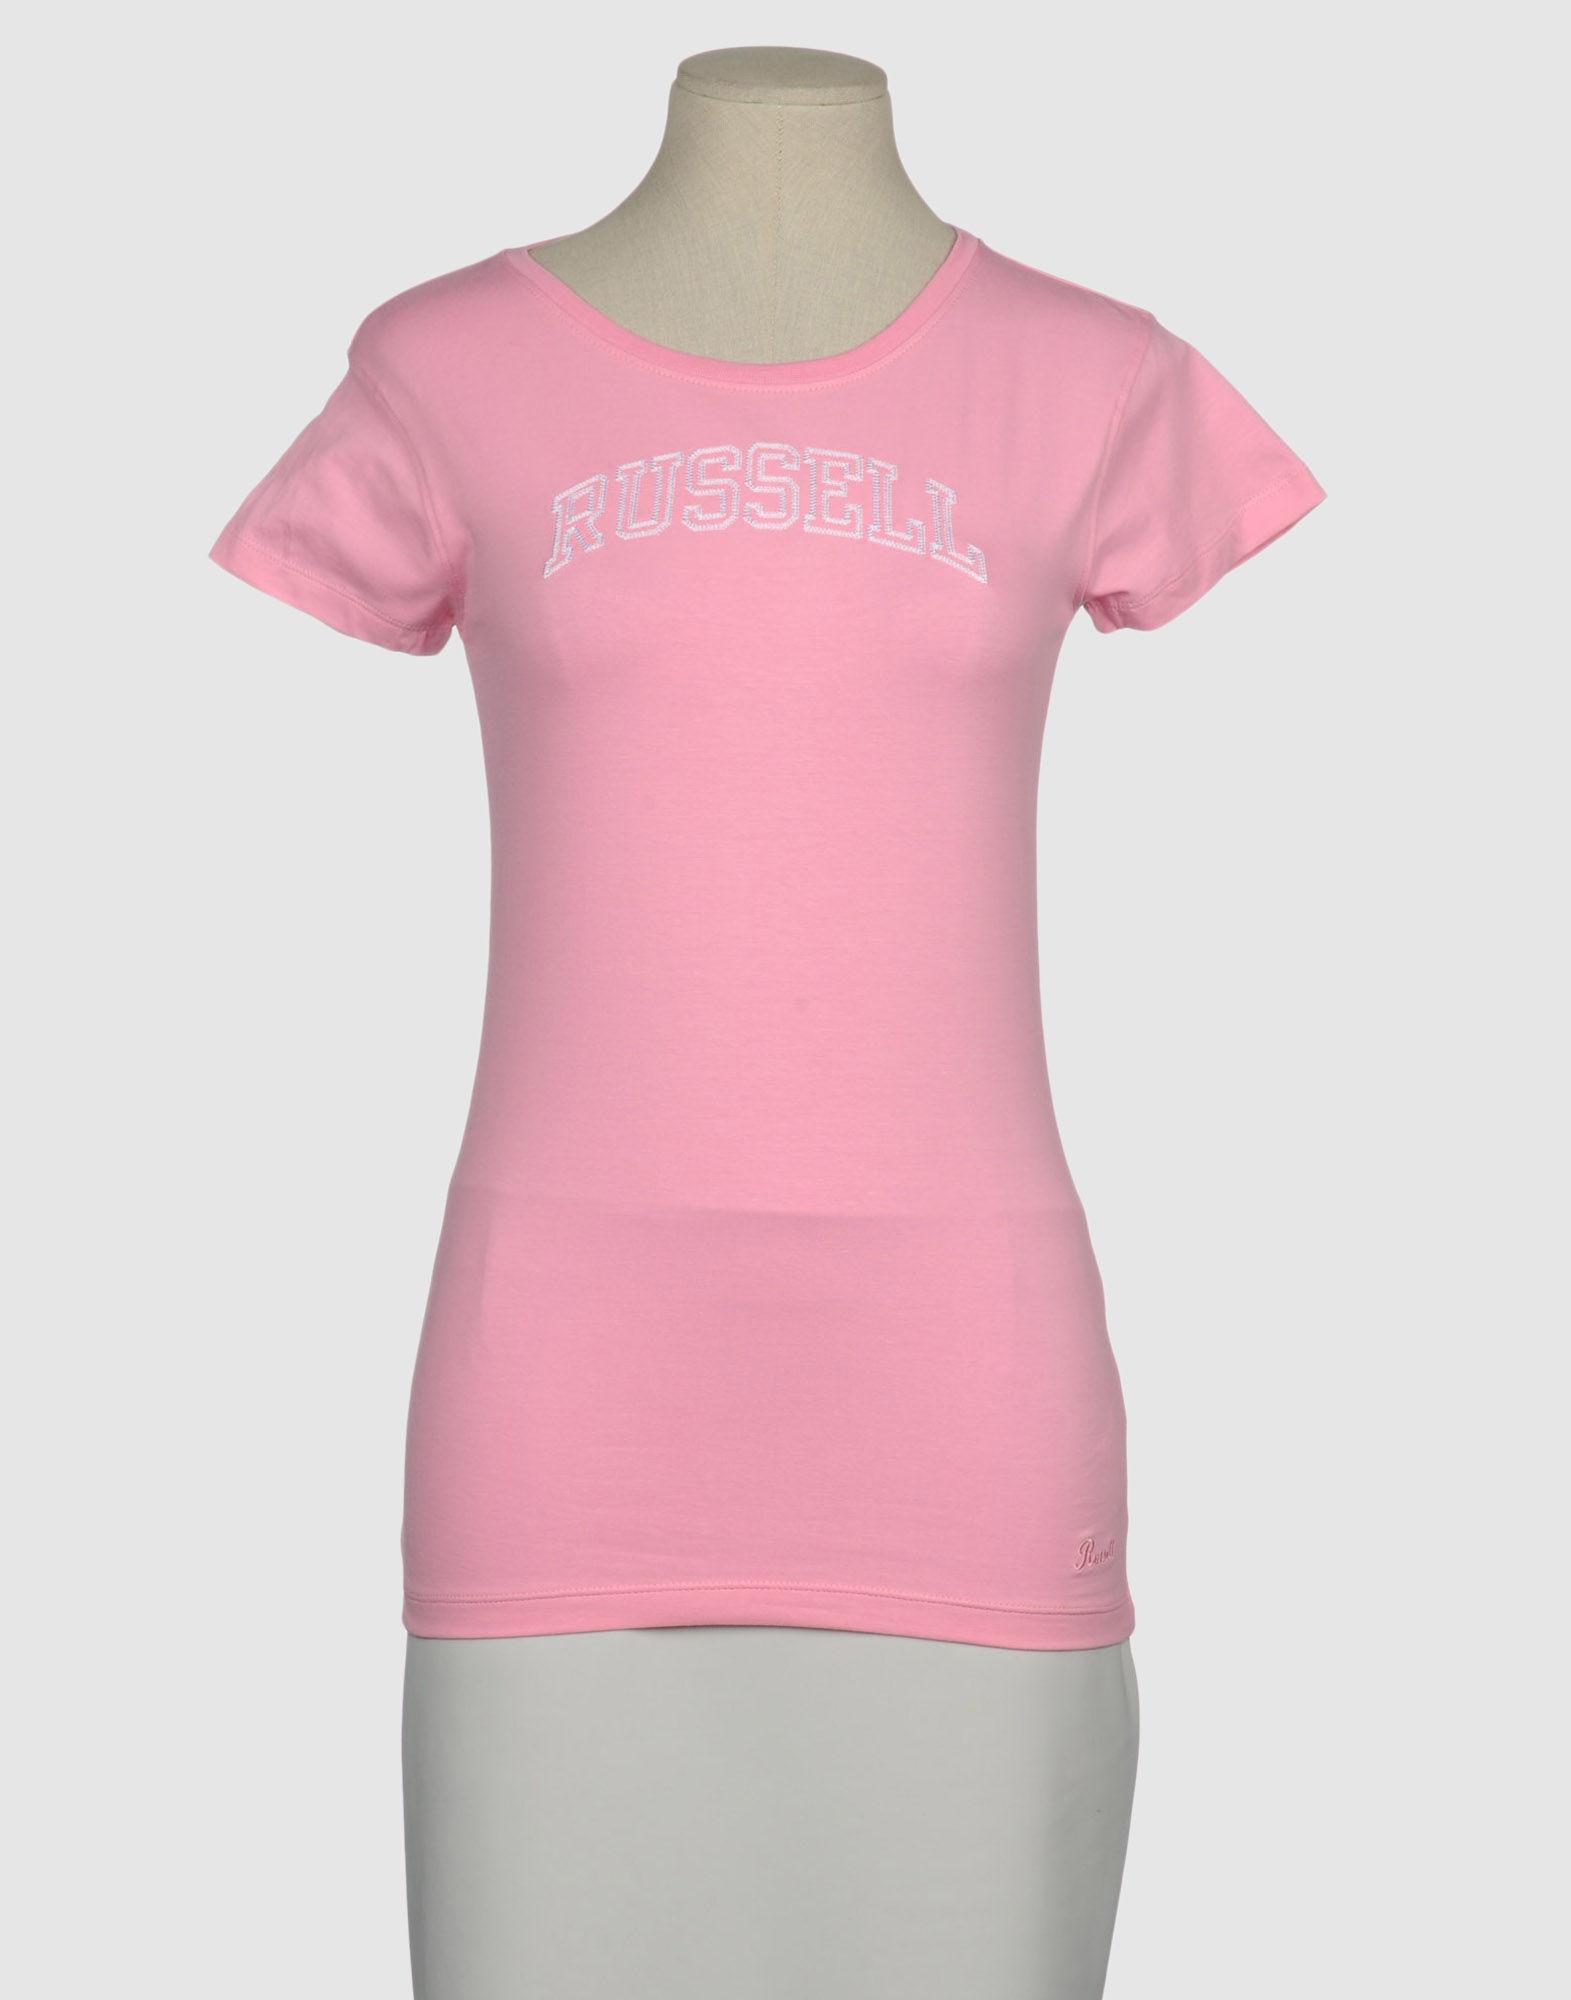 Foto Russell Athletic Camisetas De Manga Corta Mujer Rosa foto 732351